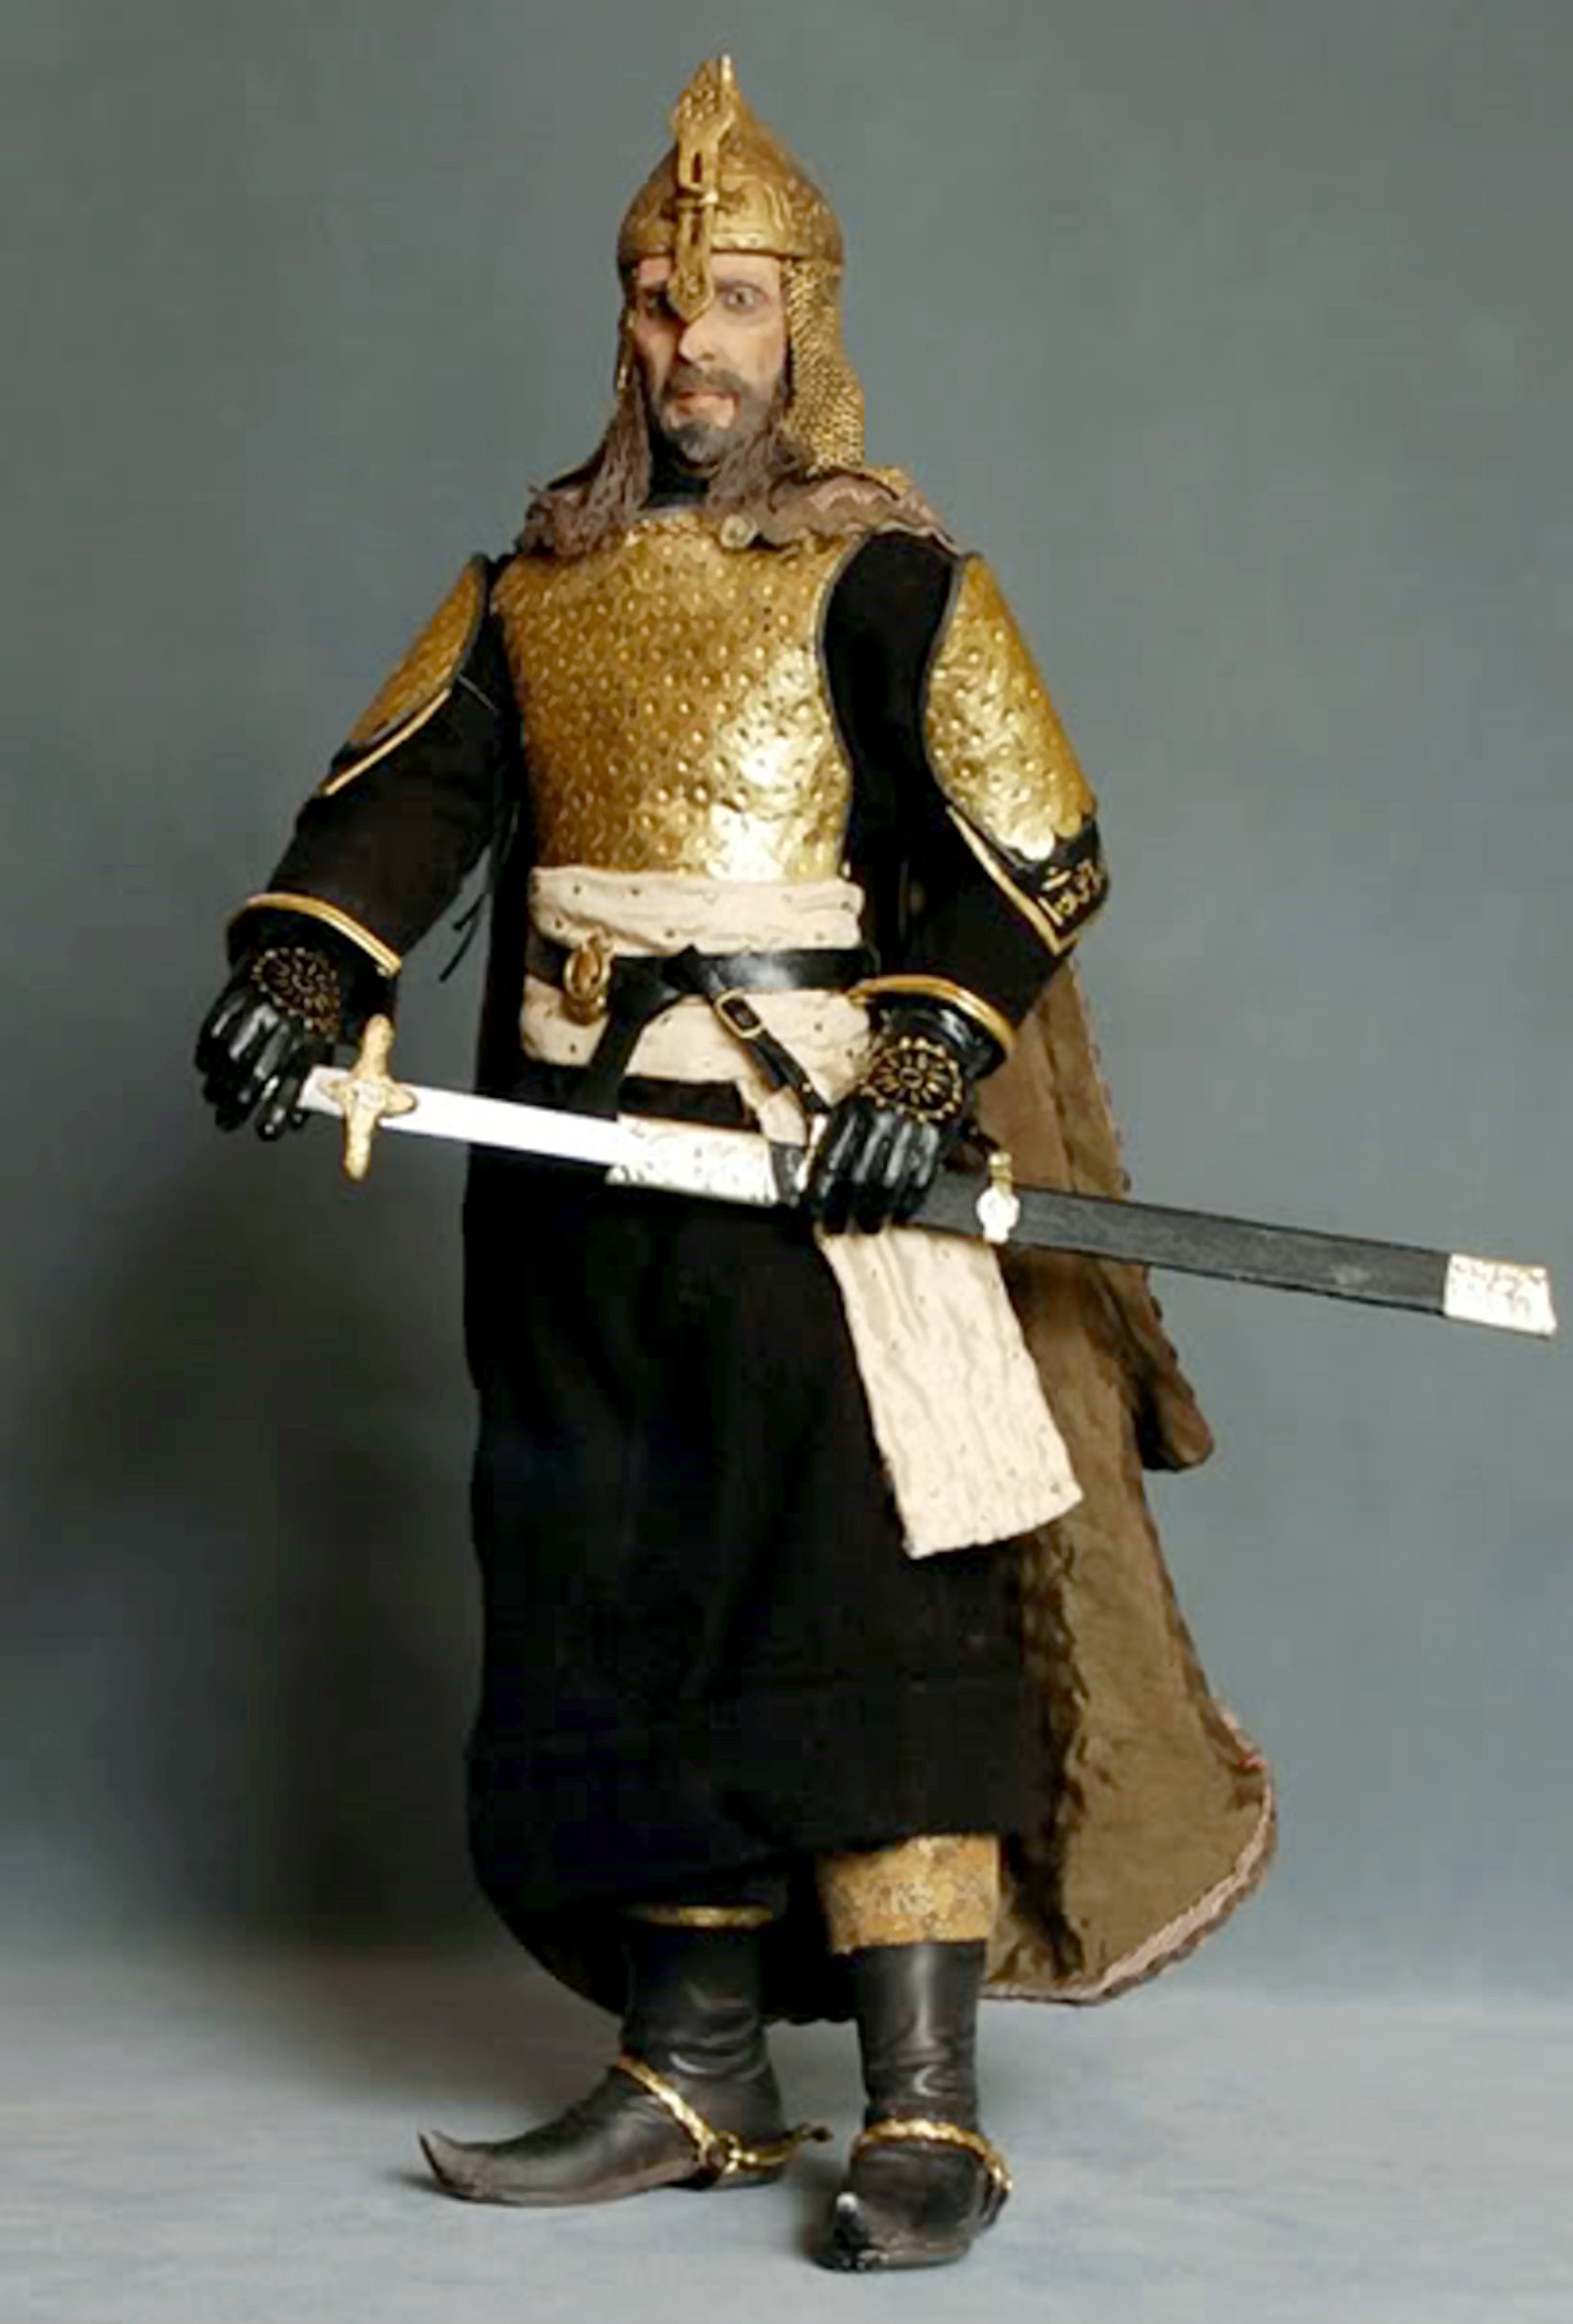 Saladin 'Kingdom of Heaven' replica figure (2008) by Kowalski in Barcelona